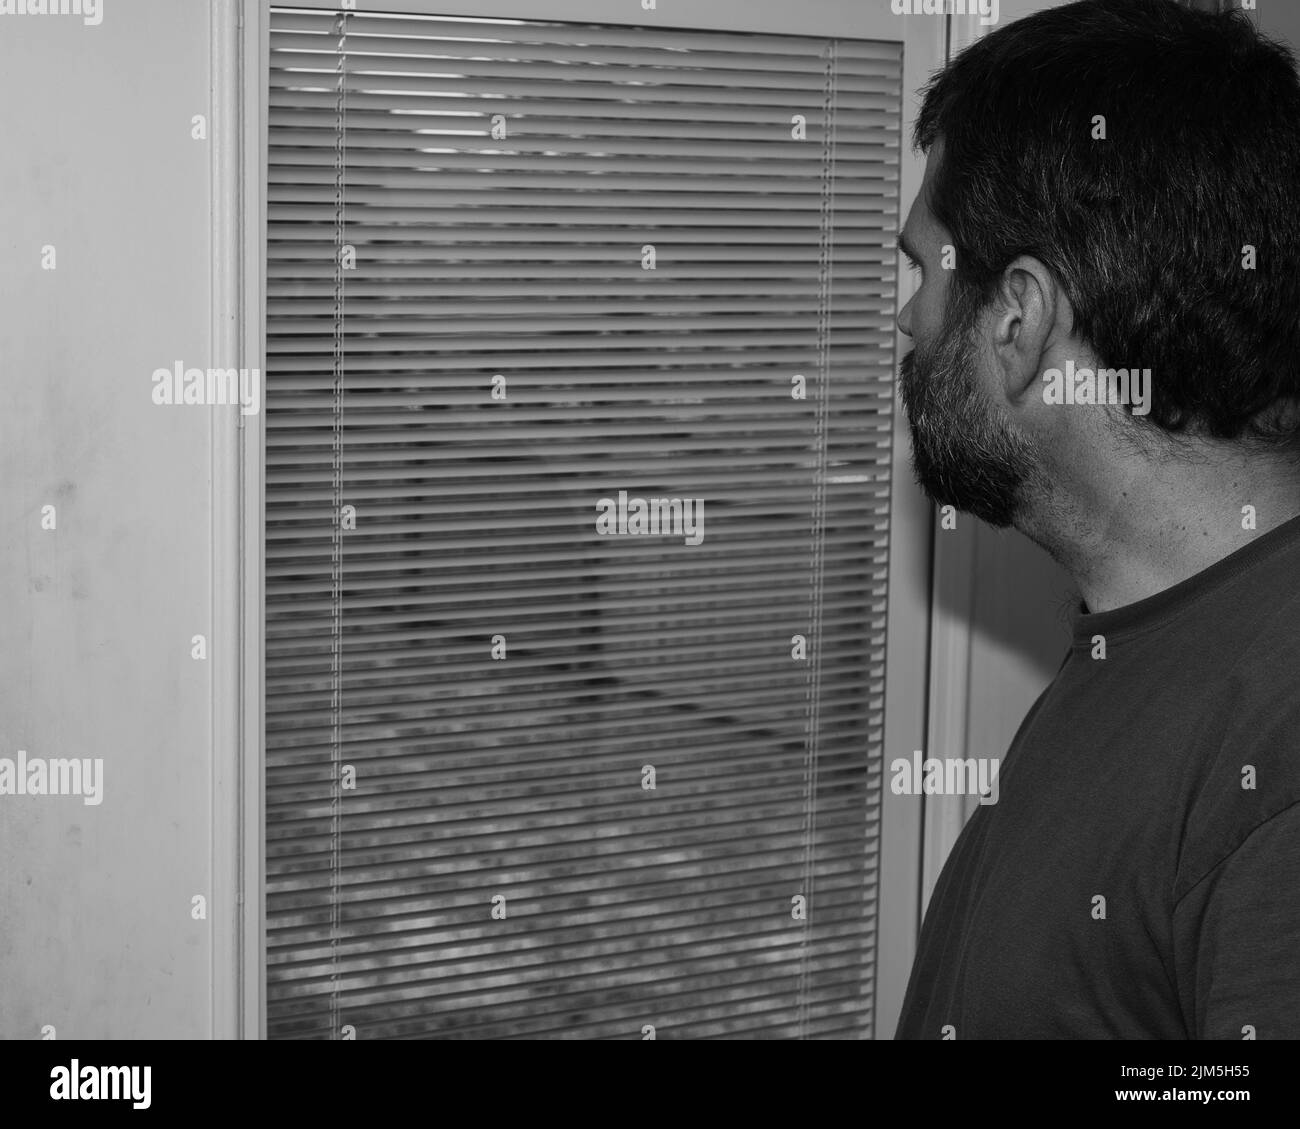 Saisonale affektive Störung - TRAURIG - depressiver Mann, der ziellos aus dem Fenster schaut - psychische Gesundheit Stockfoto